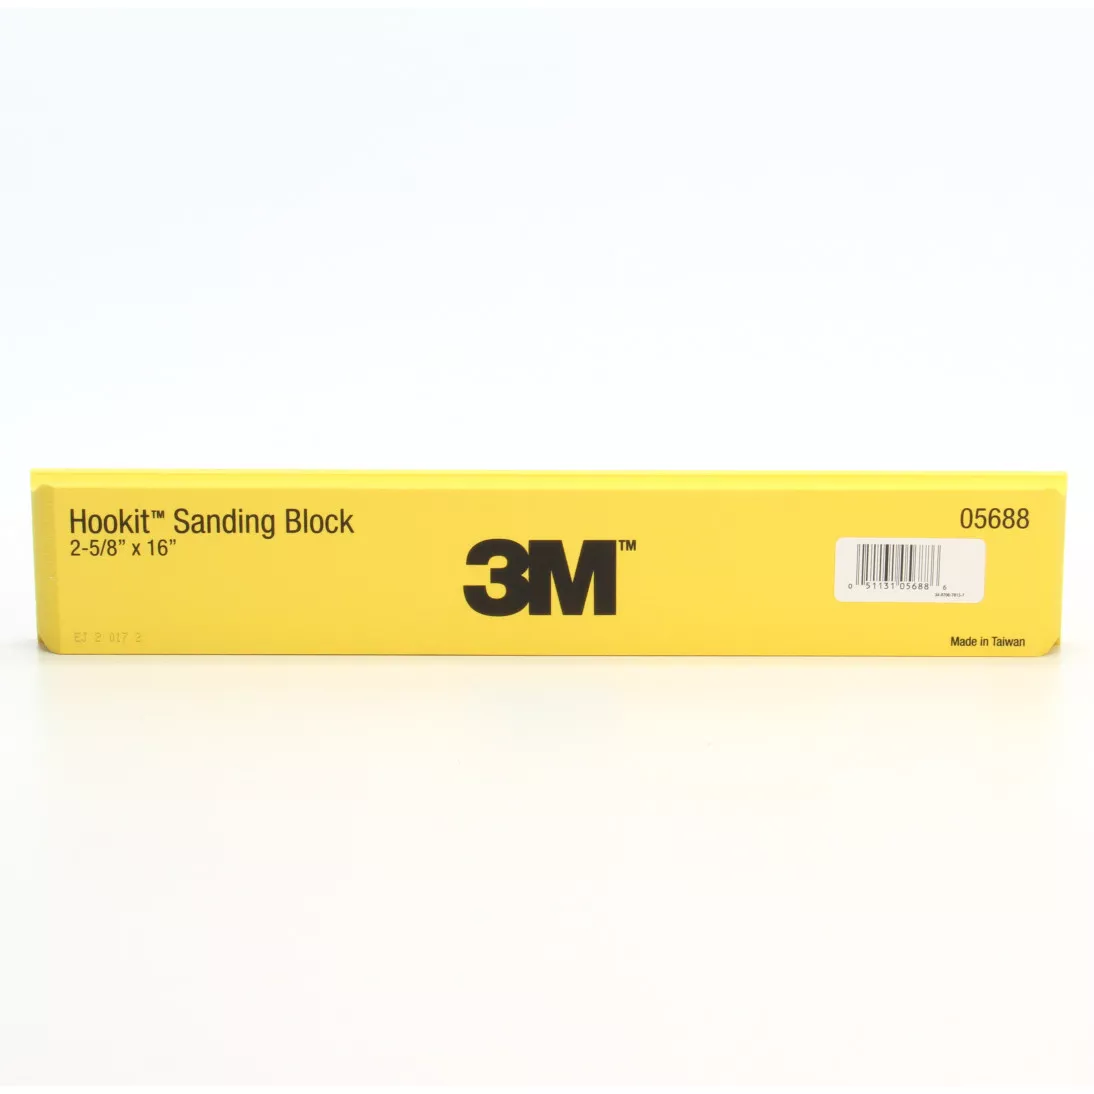 3M™ Hookit™ Sanding Block, 05688, 1-1/2 in X 2-5/8 in X 16 in, 8 per
case